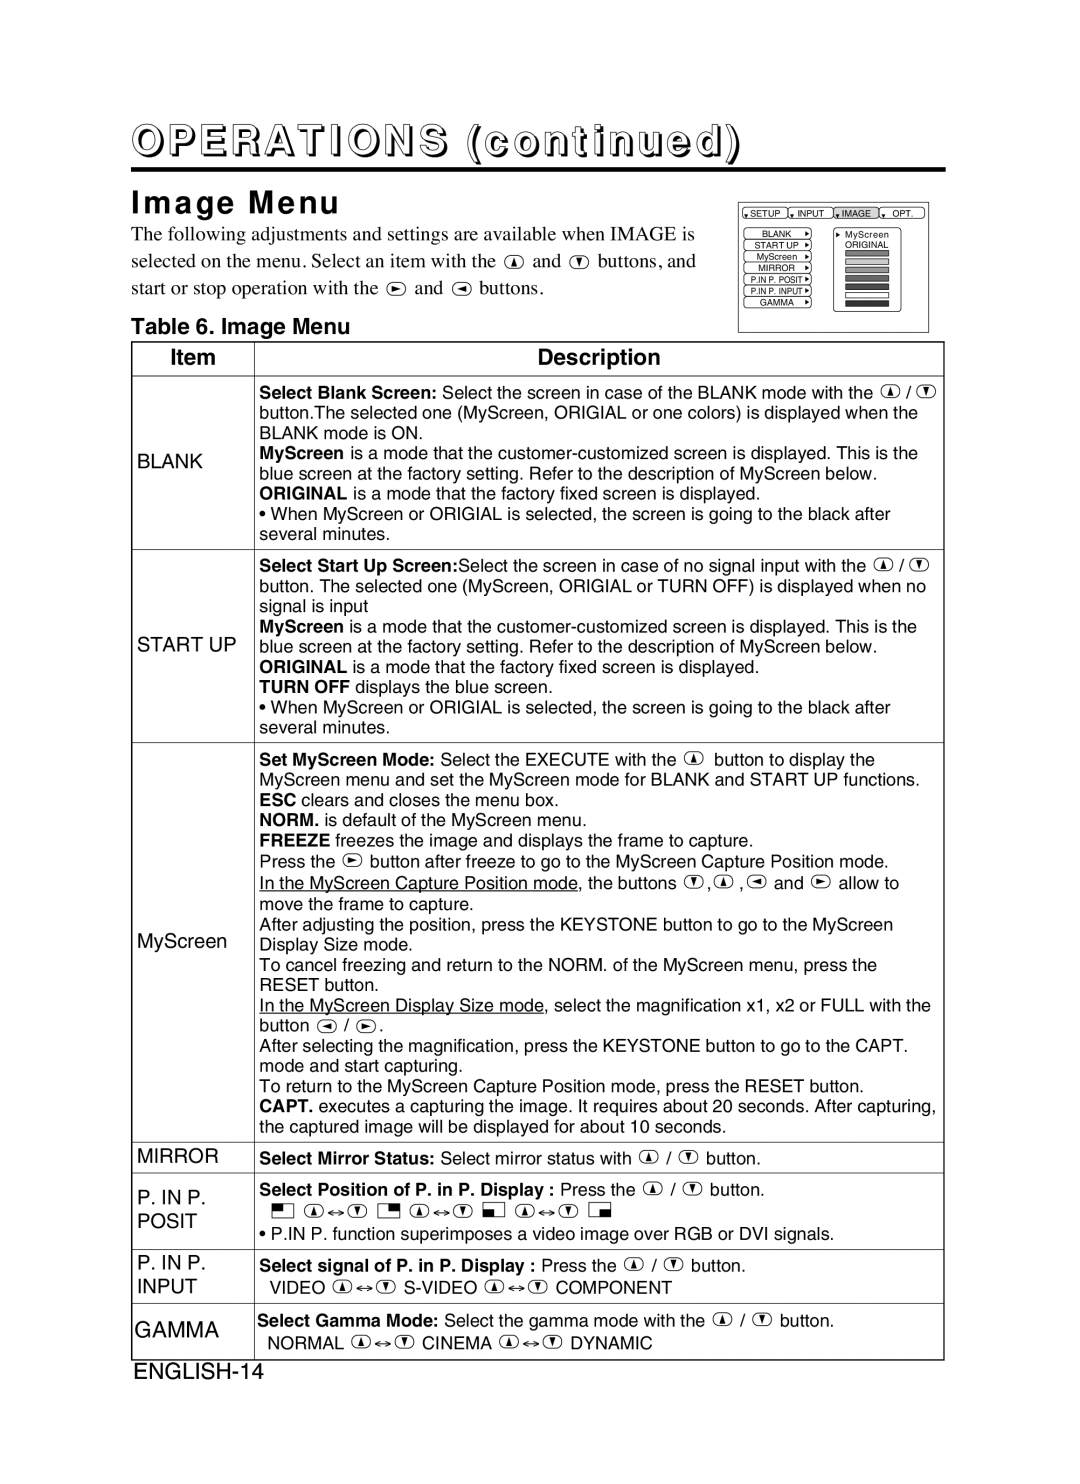 Proxima ASA DP6870 manual Image Menu, OPERATIONS continued, Description, Gamma, ENGLISH-14 